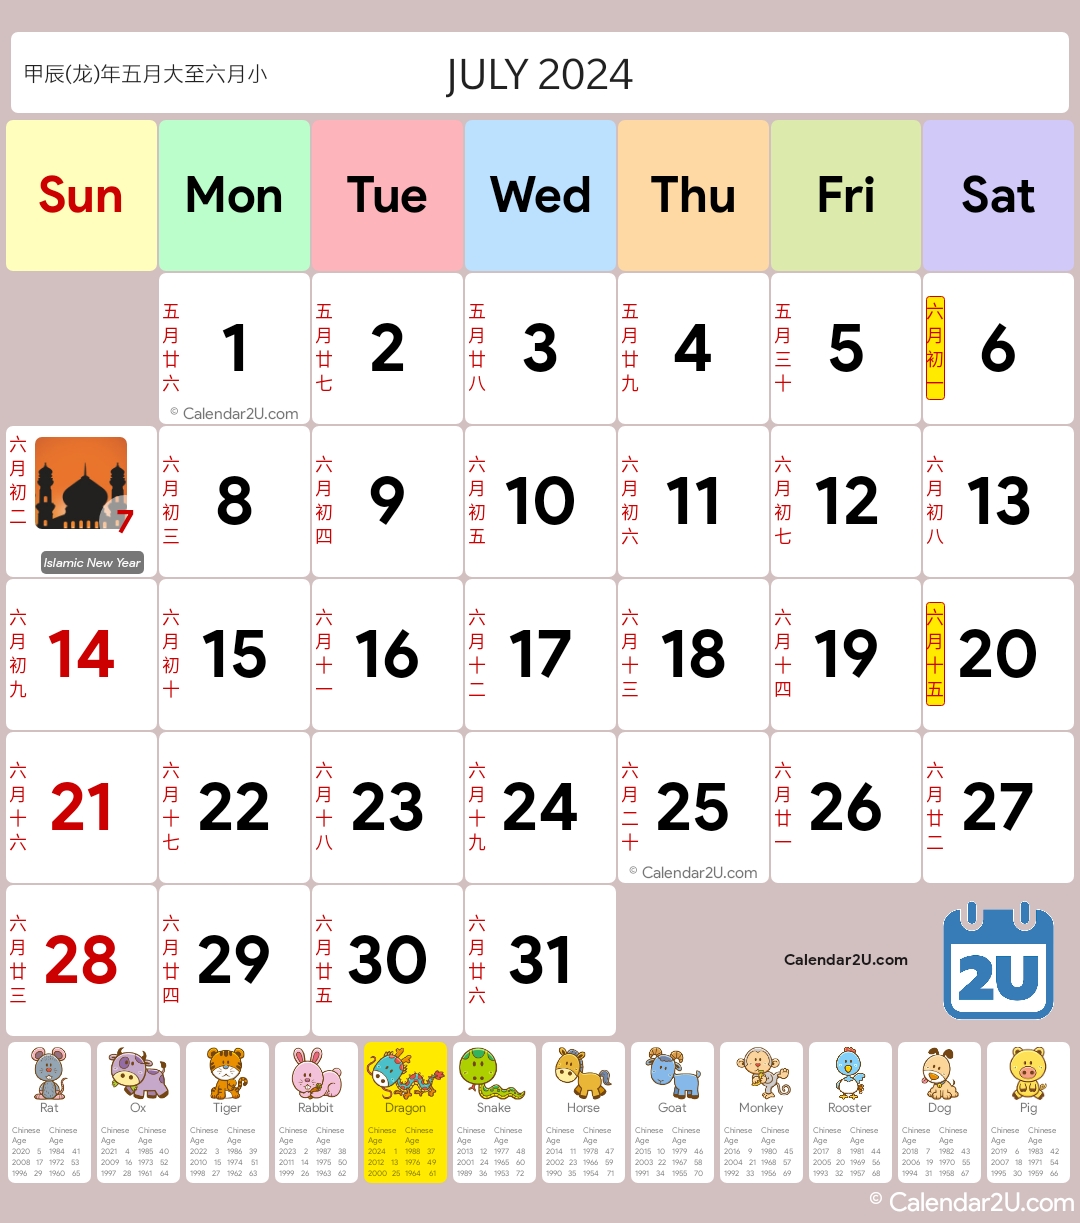 印度尼西亚 - 中国农历 (Indonesia - Chinese Lunar) Calendar